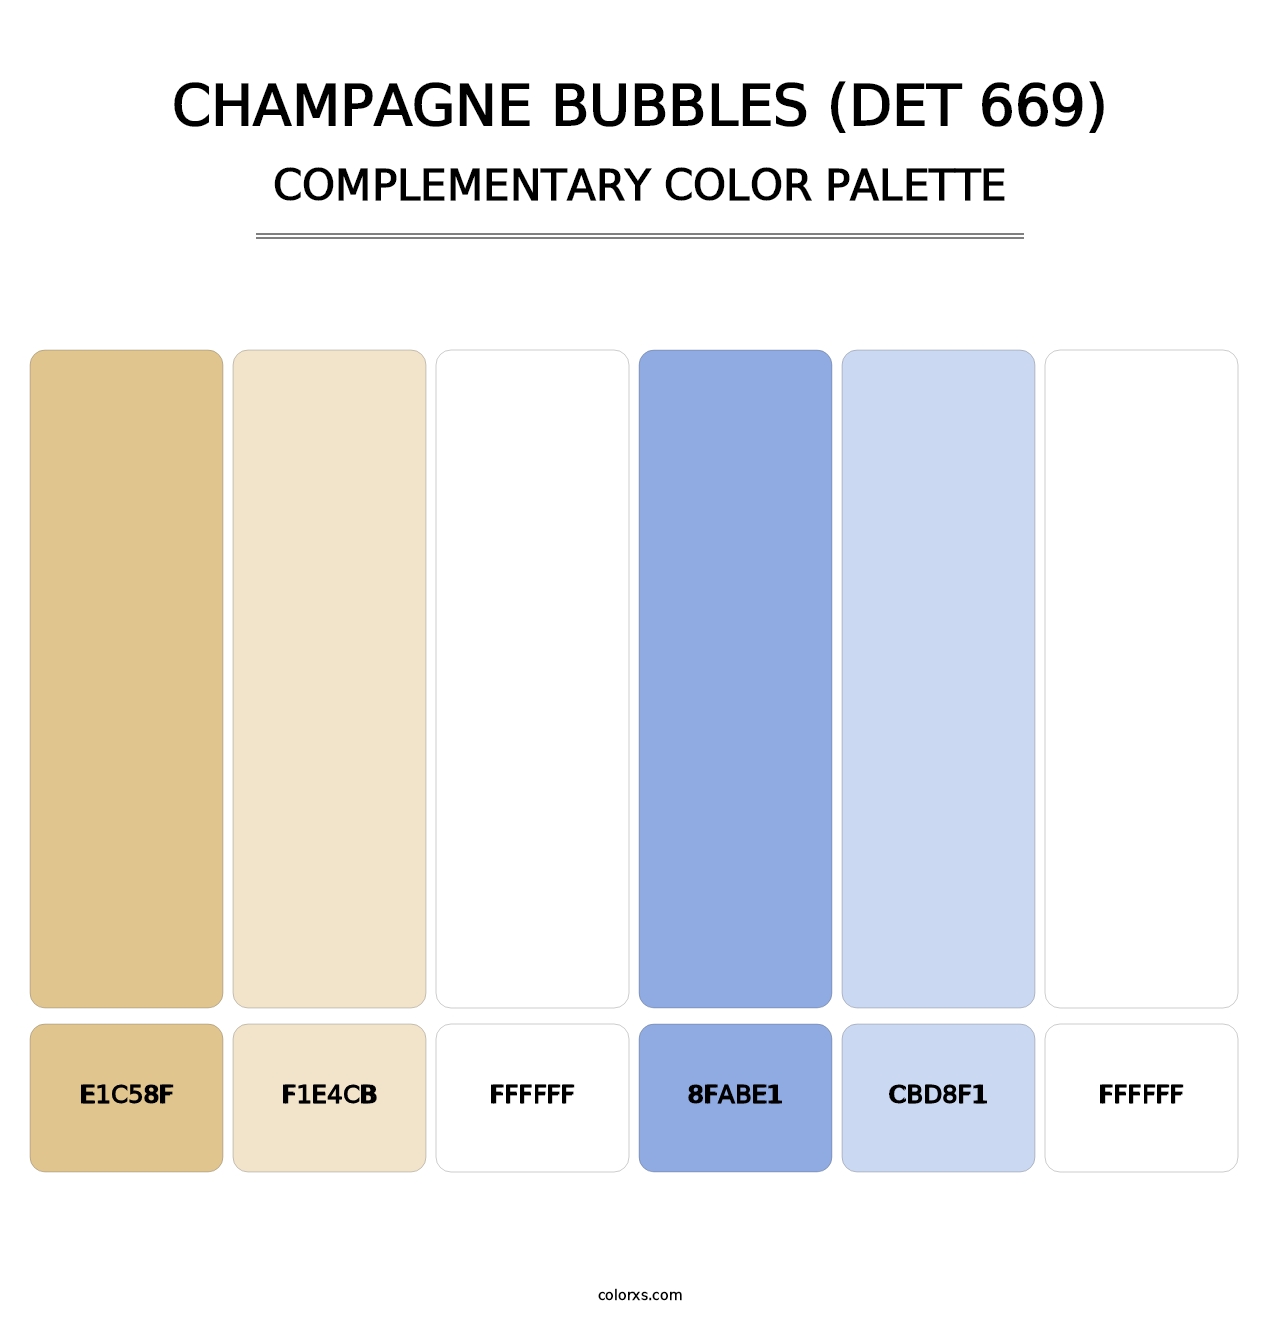 Champagne Bubbles (DET 669) - Complementary Color Palette